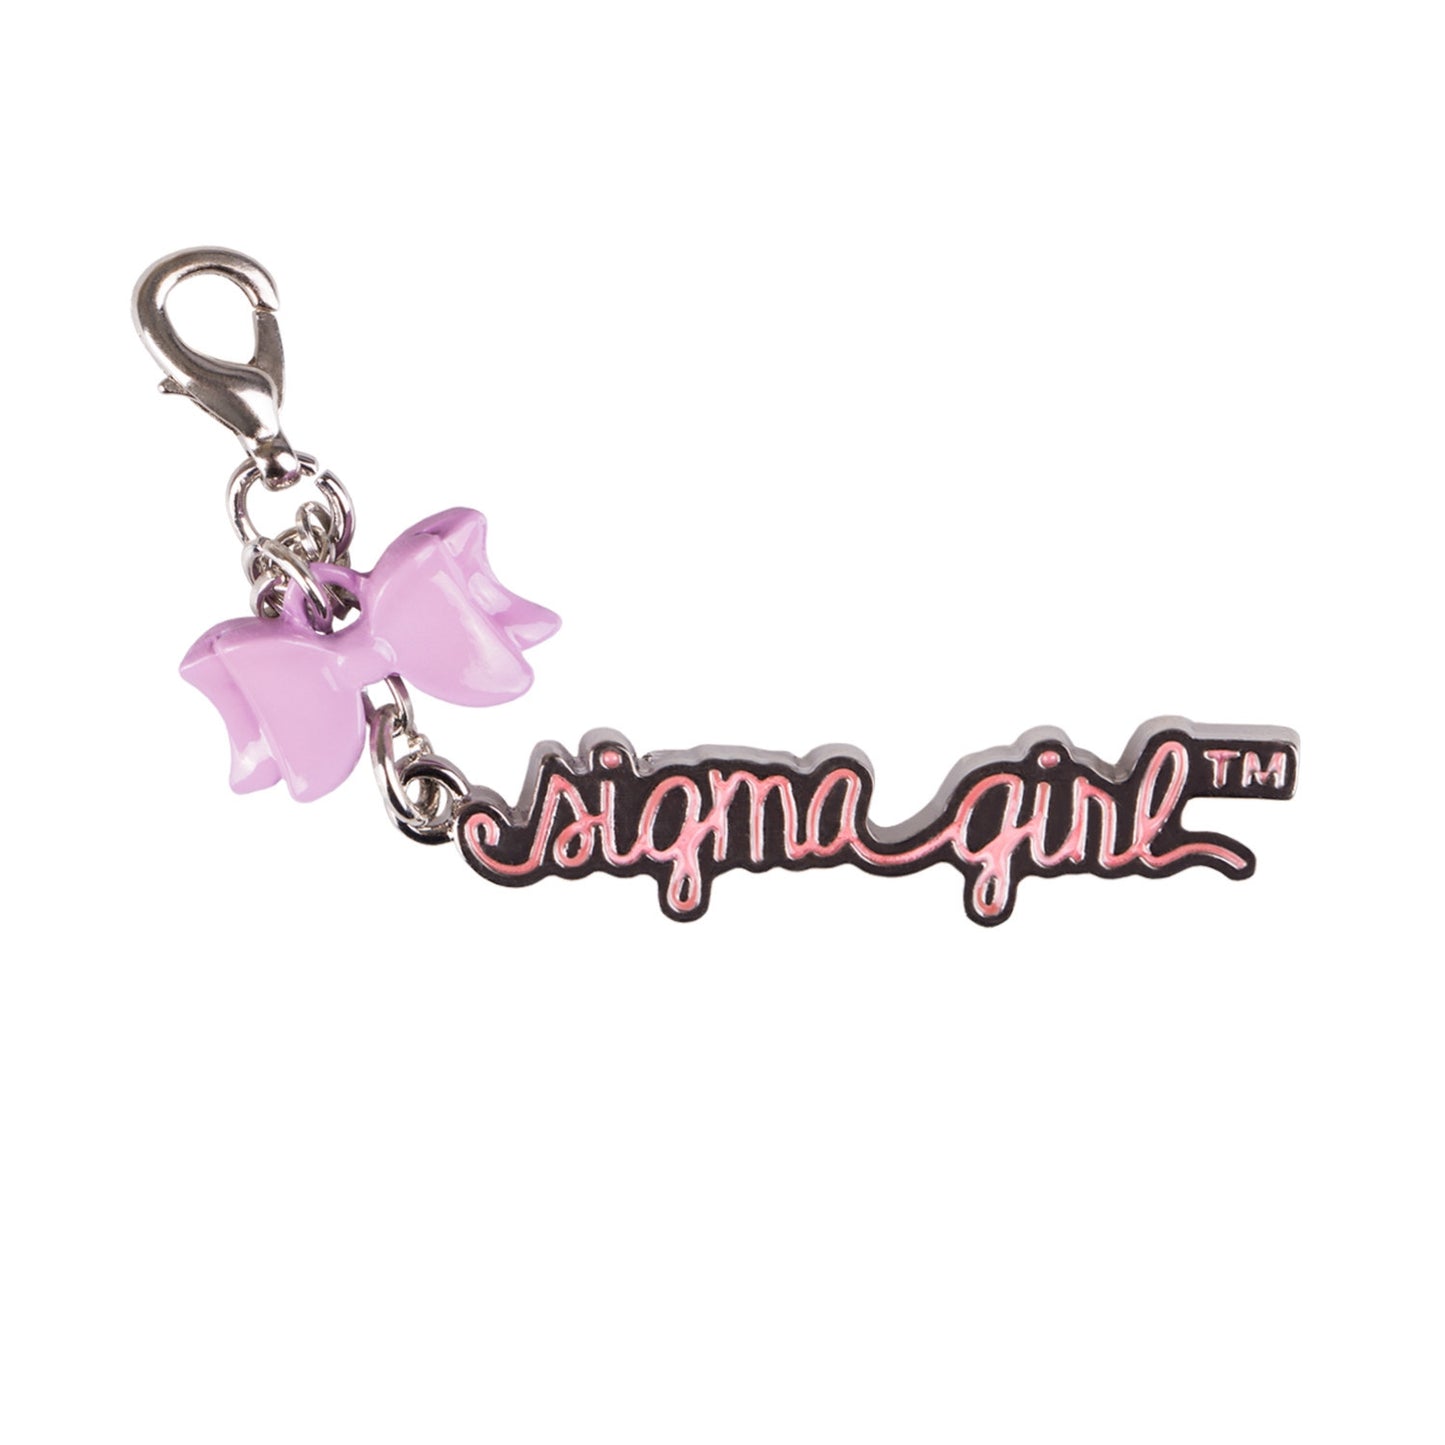 Sigma Beauty - Sigma Girl™ Color Pop Makeup & Brush Set - Sugar Plum